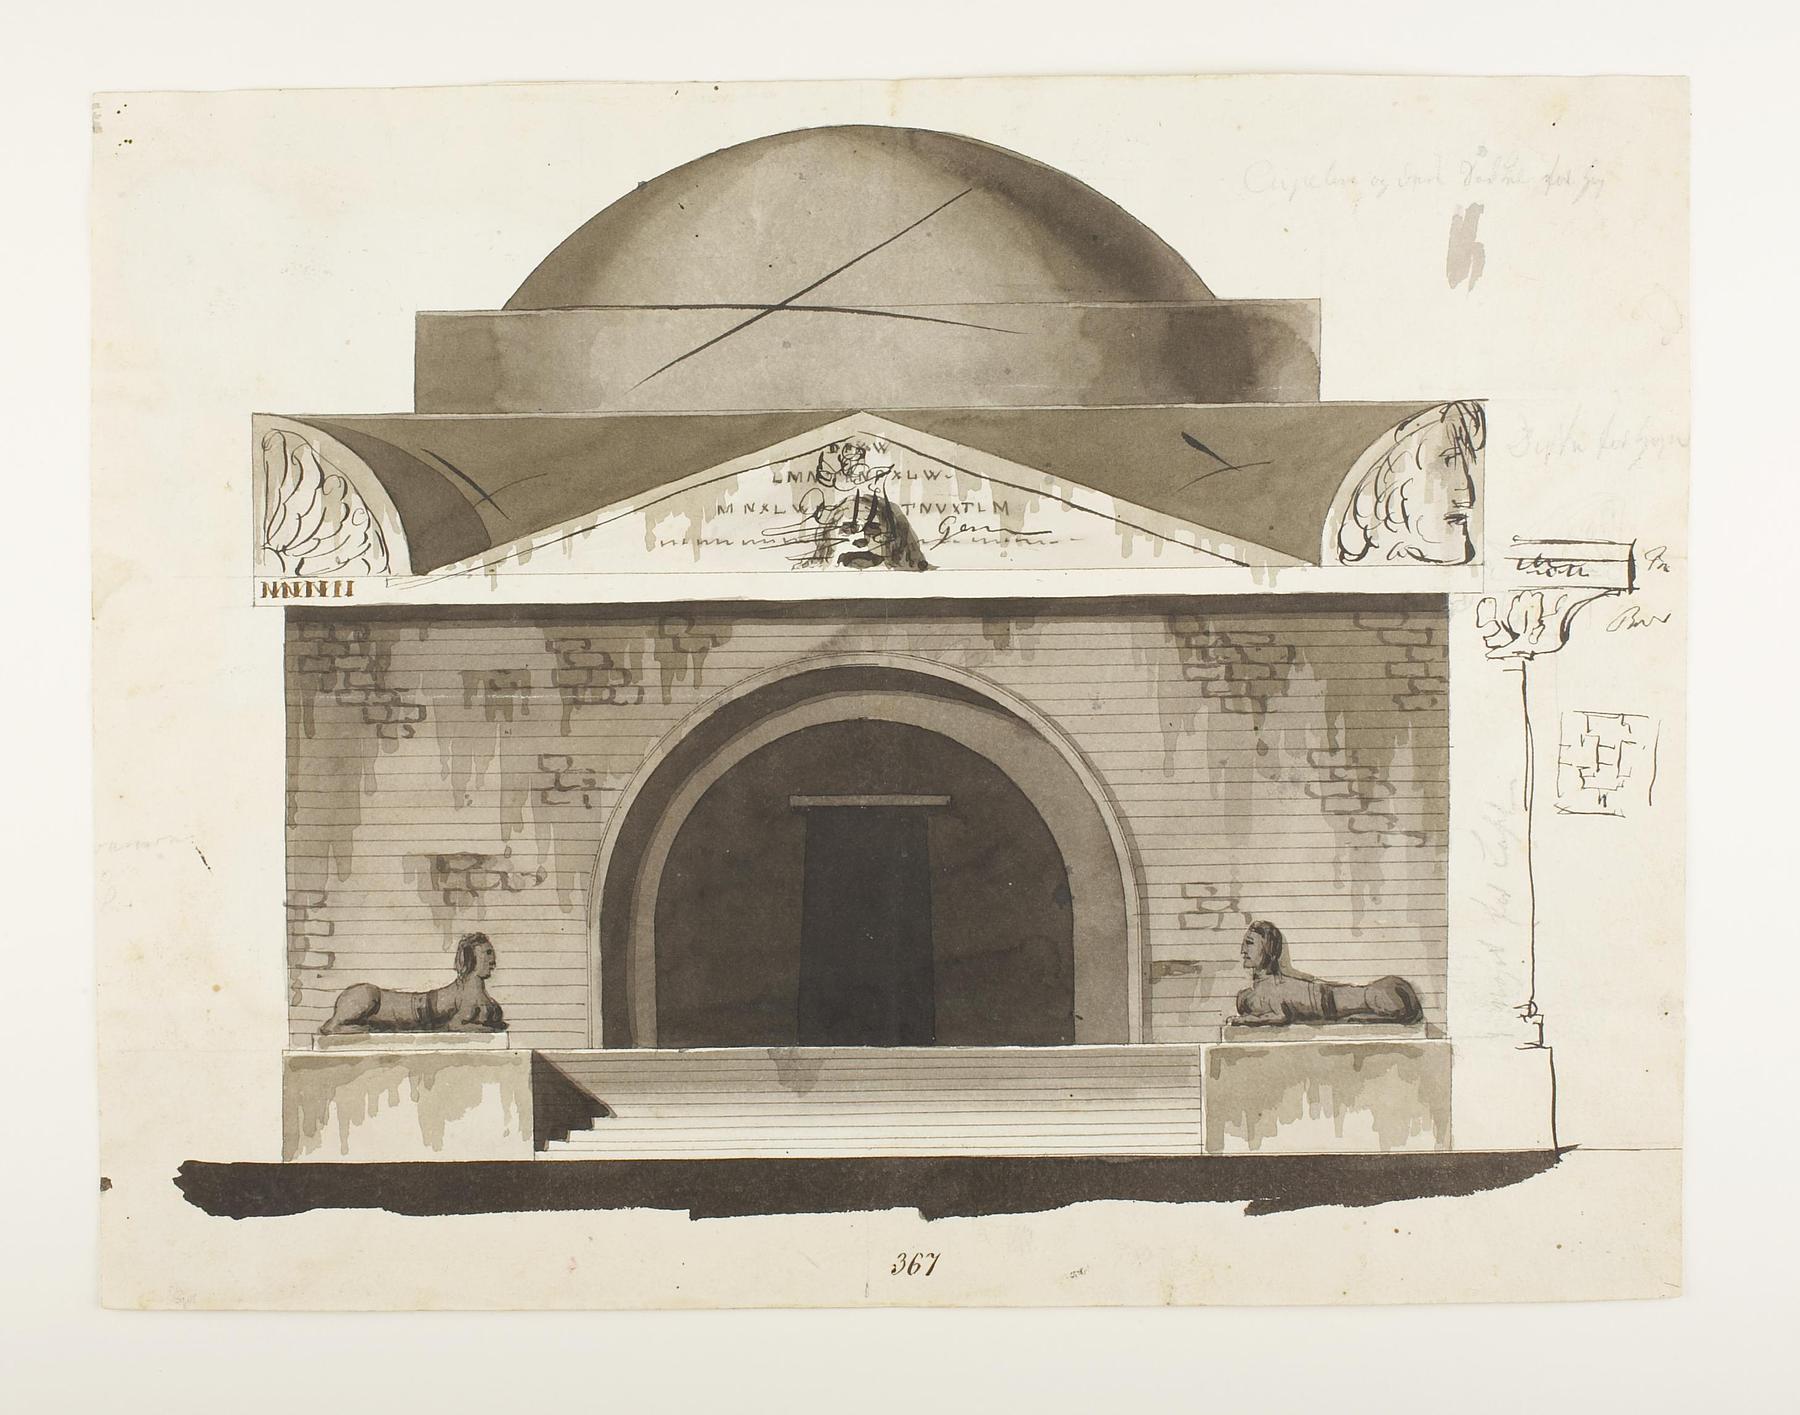 Udkast til et mausoleum eller gravkapel i antik stil, opstalt af facade, D855